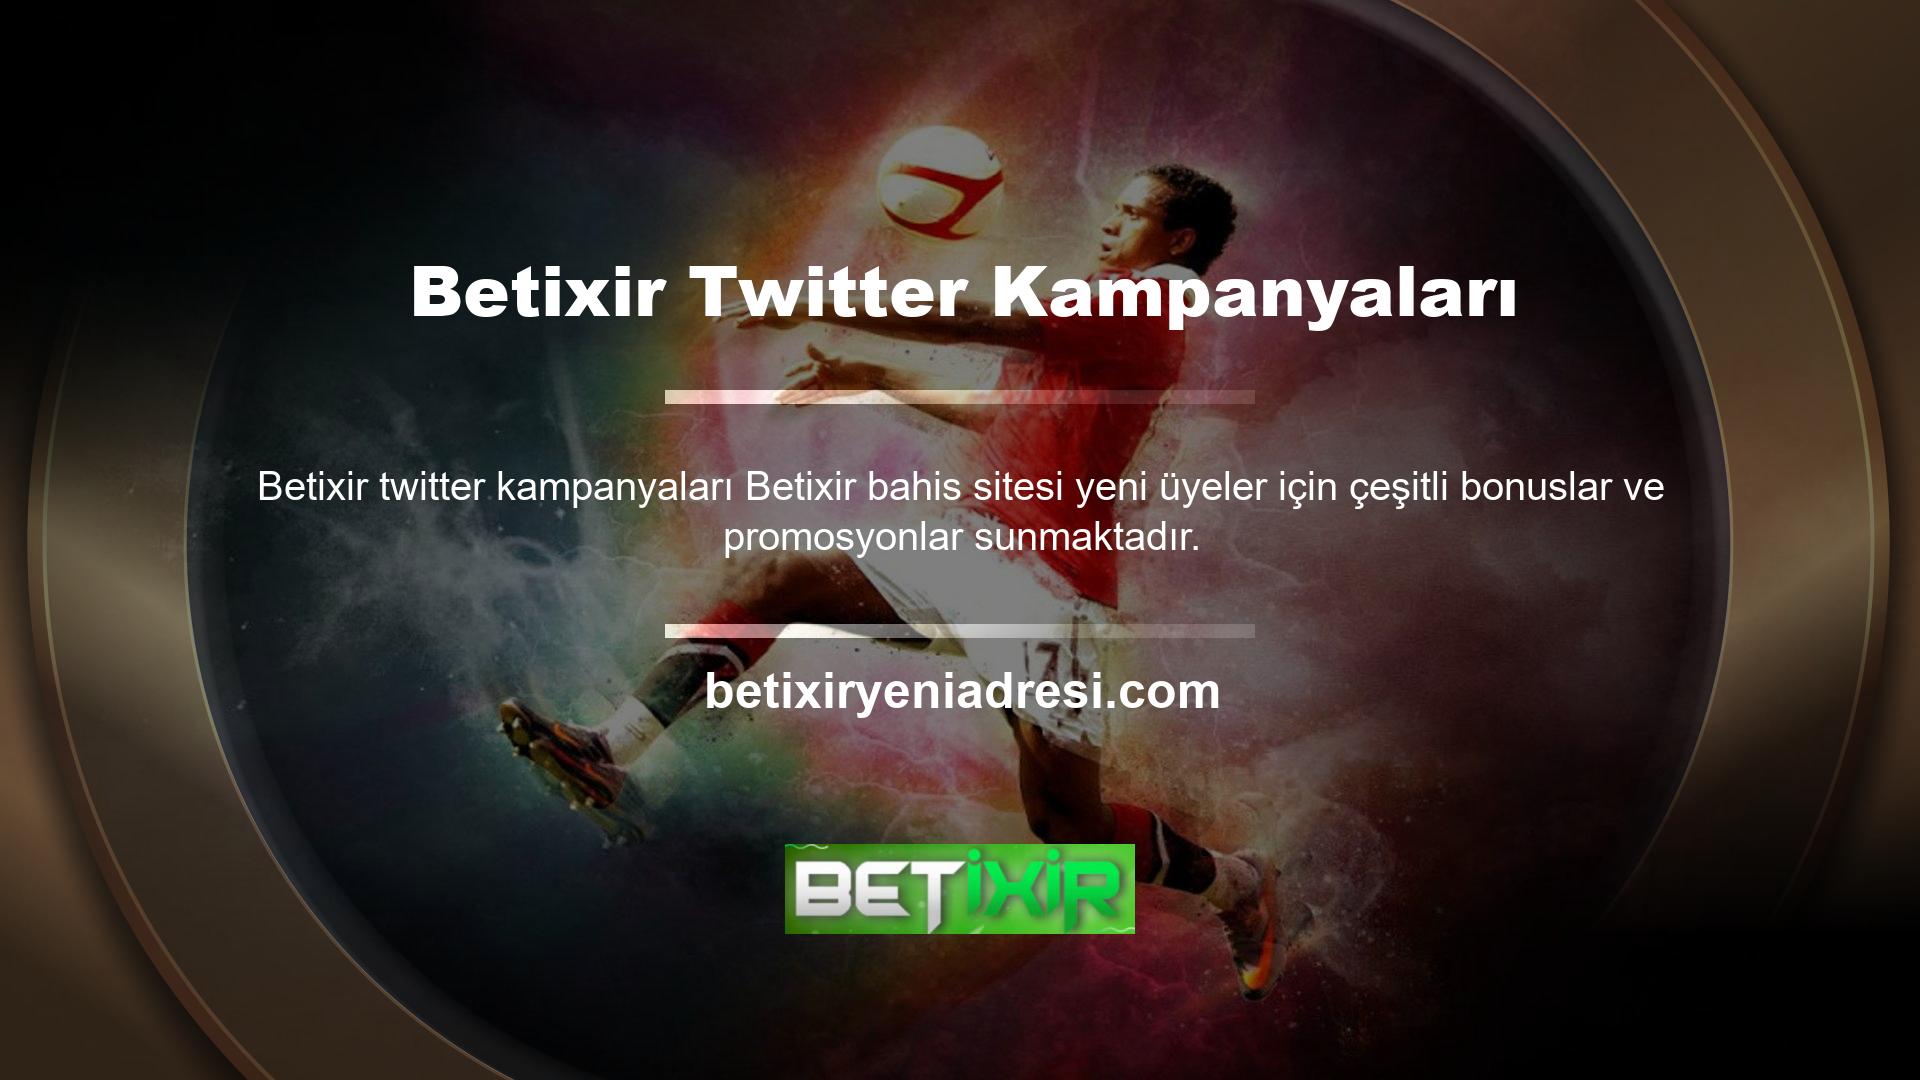 Promosyonlardan ve bonuslardan yararlanmak isteyen oyuncular Betixir Twitter'da takip edebilirler